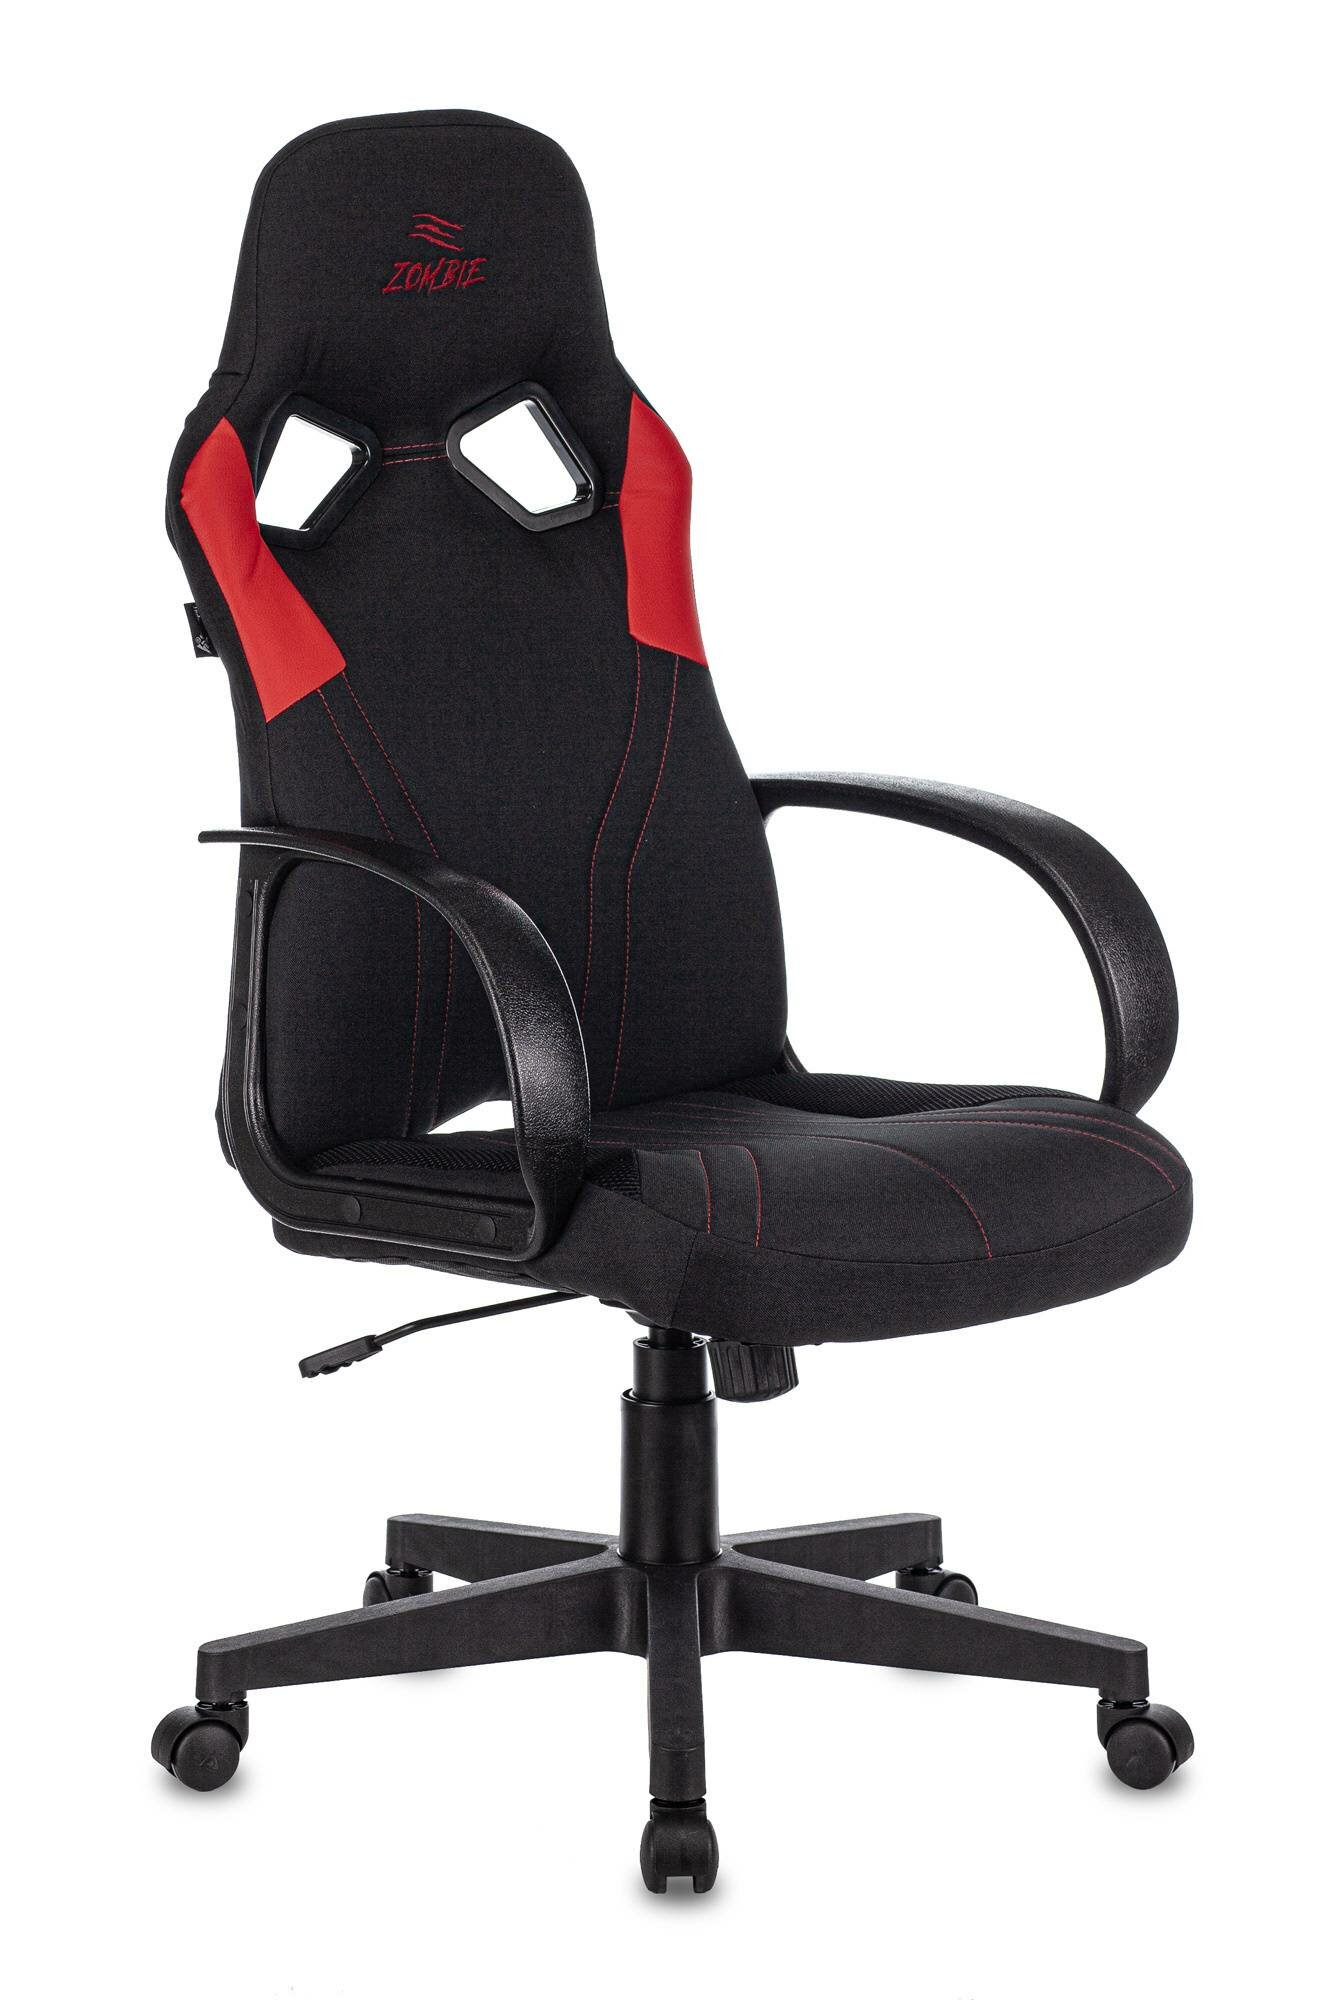 Кресло игровое Zombie RUNNER, обивка: текстиль/эко.кожа, цвет: черный/красный